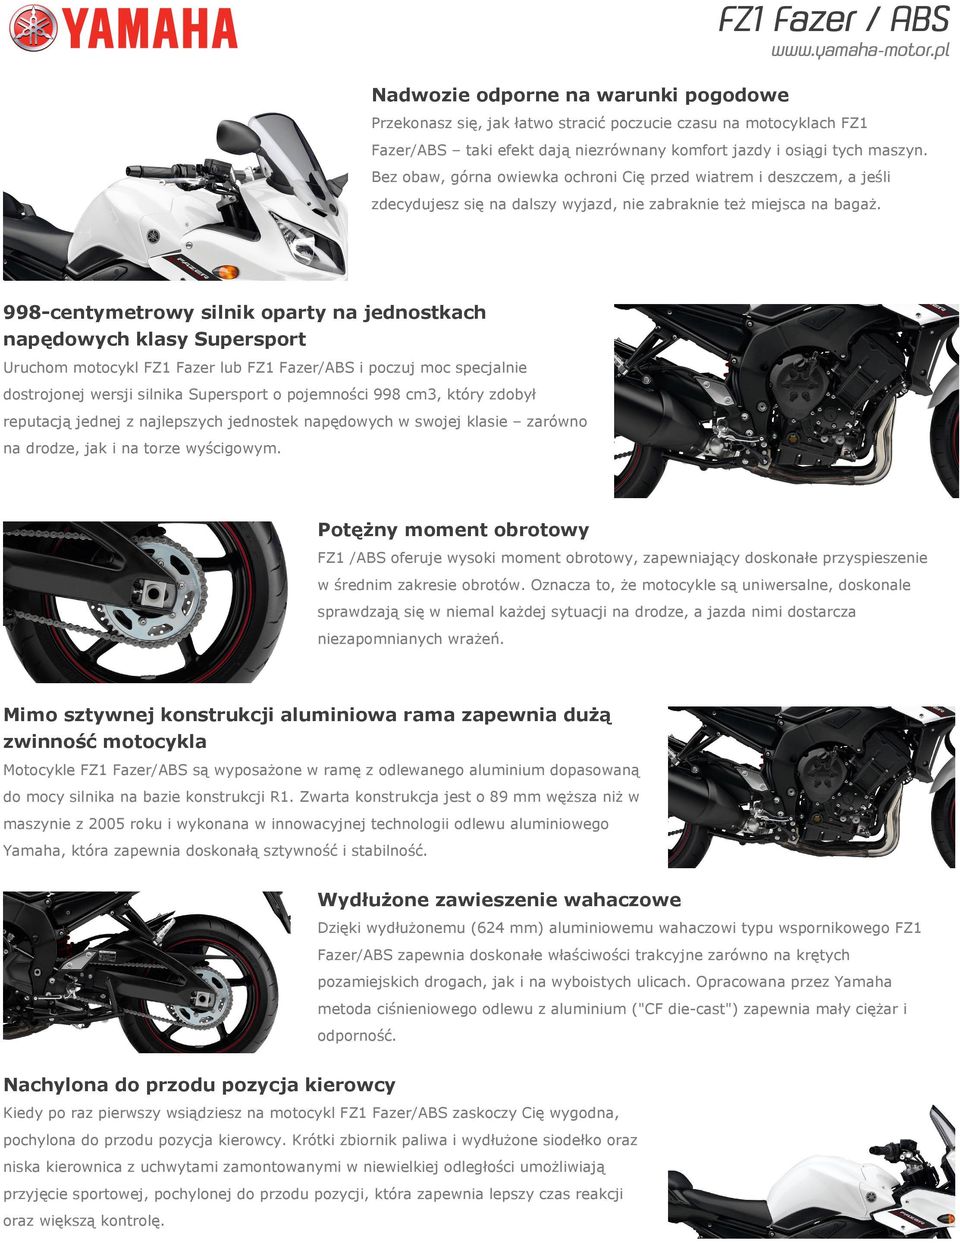 998-centymetrowy silnik oparty na jednostkach napędowych klasy Supersport Uruchom motocykl FZ1 Fazer lub FZ1 Fazer/ABS i poczuj moc specjalnie dostrojonej wersji silnika Supersport o pojemności 998